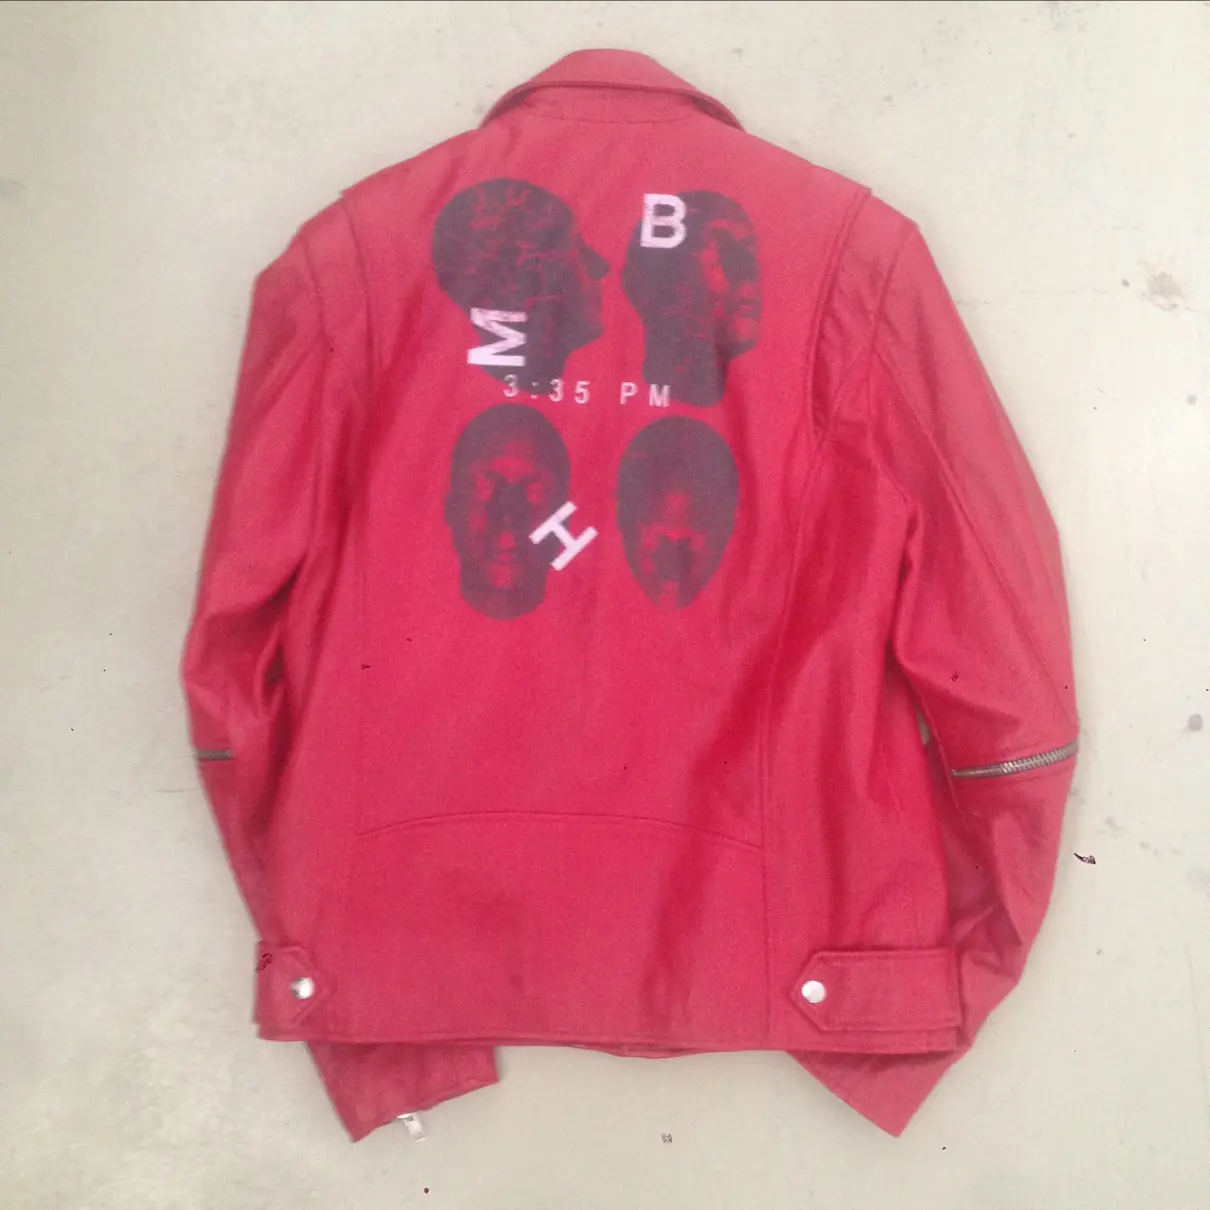 Misbhv Leather jacket for sale